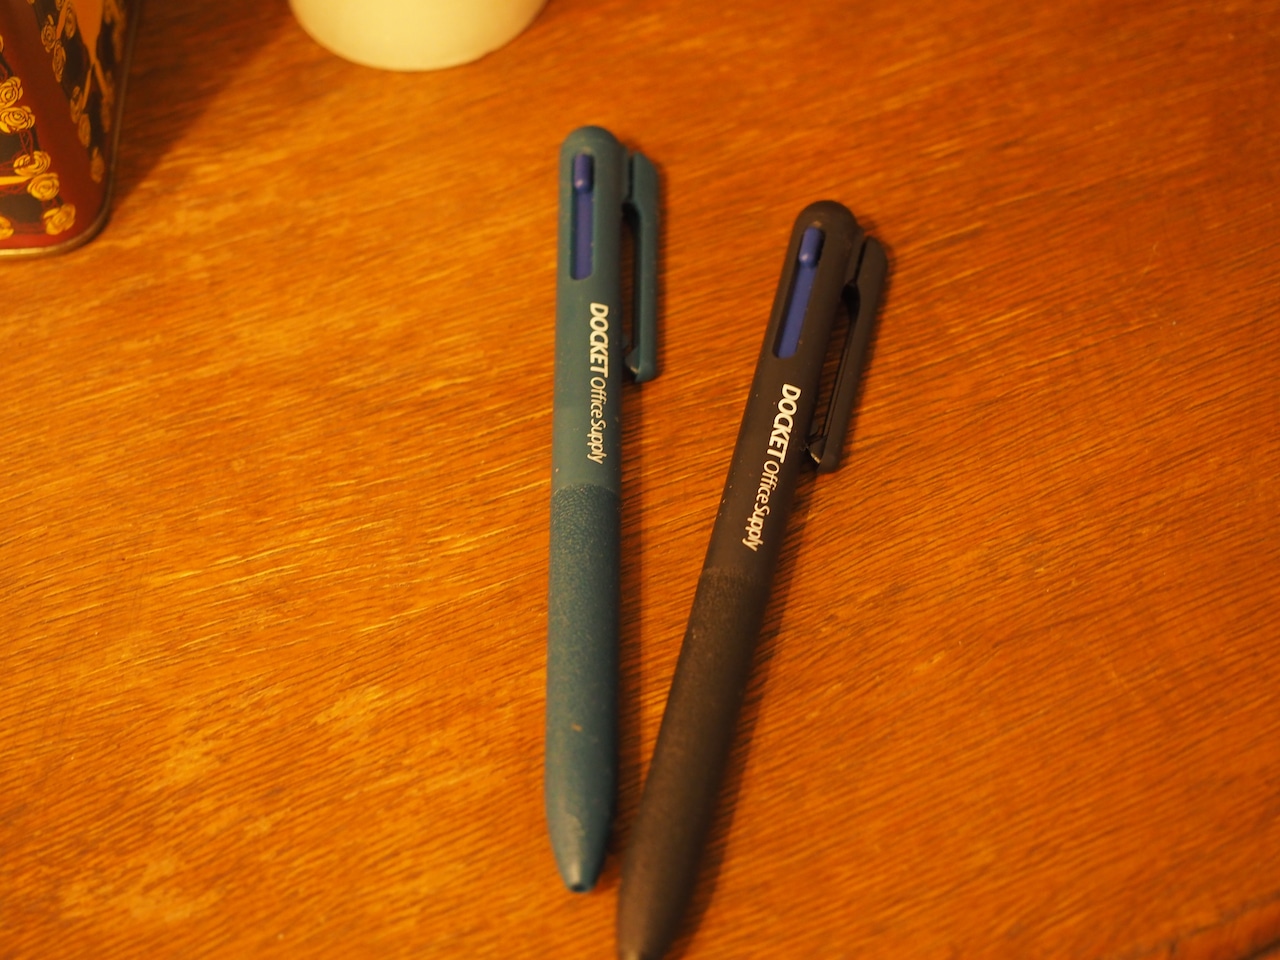 【DOCKET Office Supply】Calme 3 color ballpoint pen